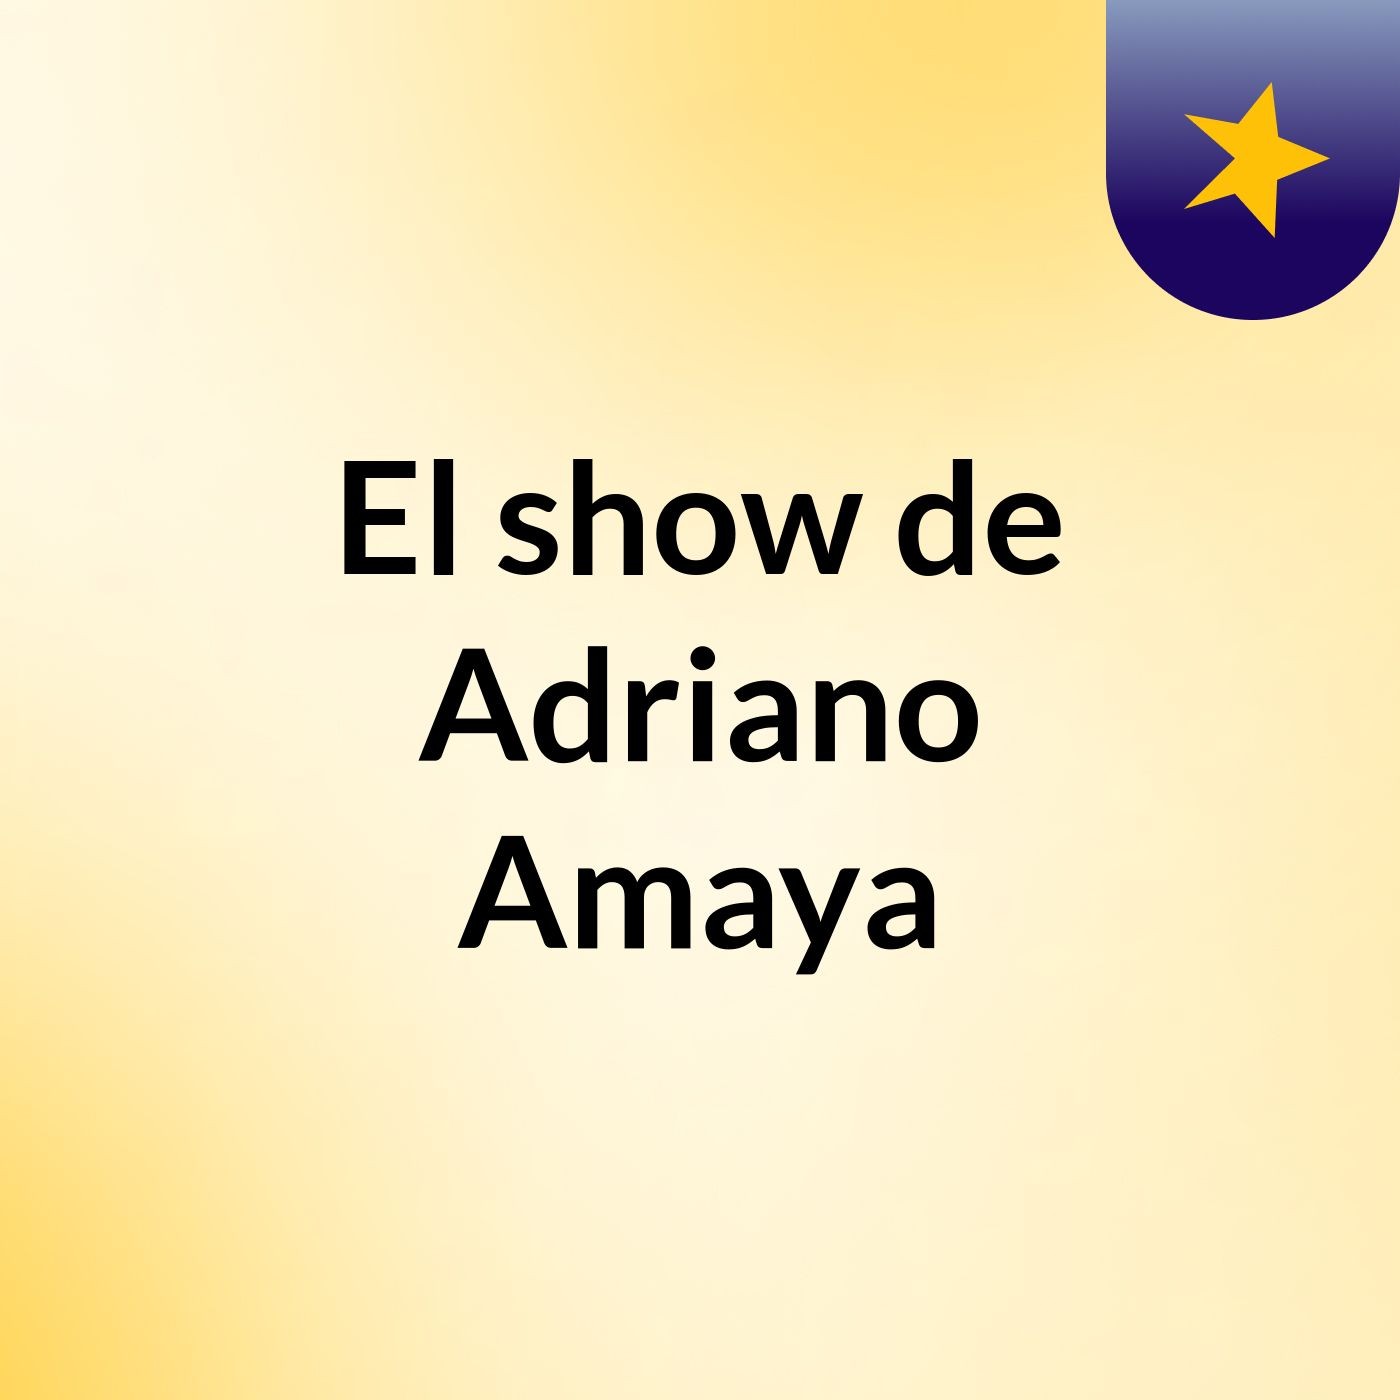 Episodio 3 - El show de Adriano Amaya